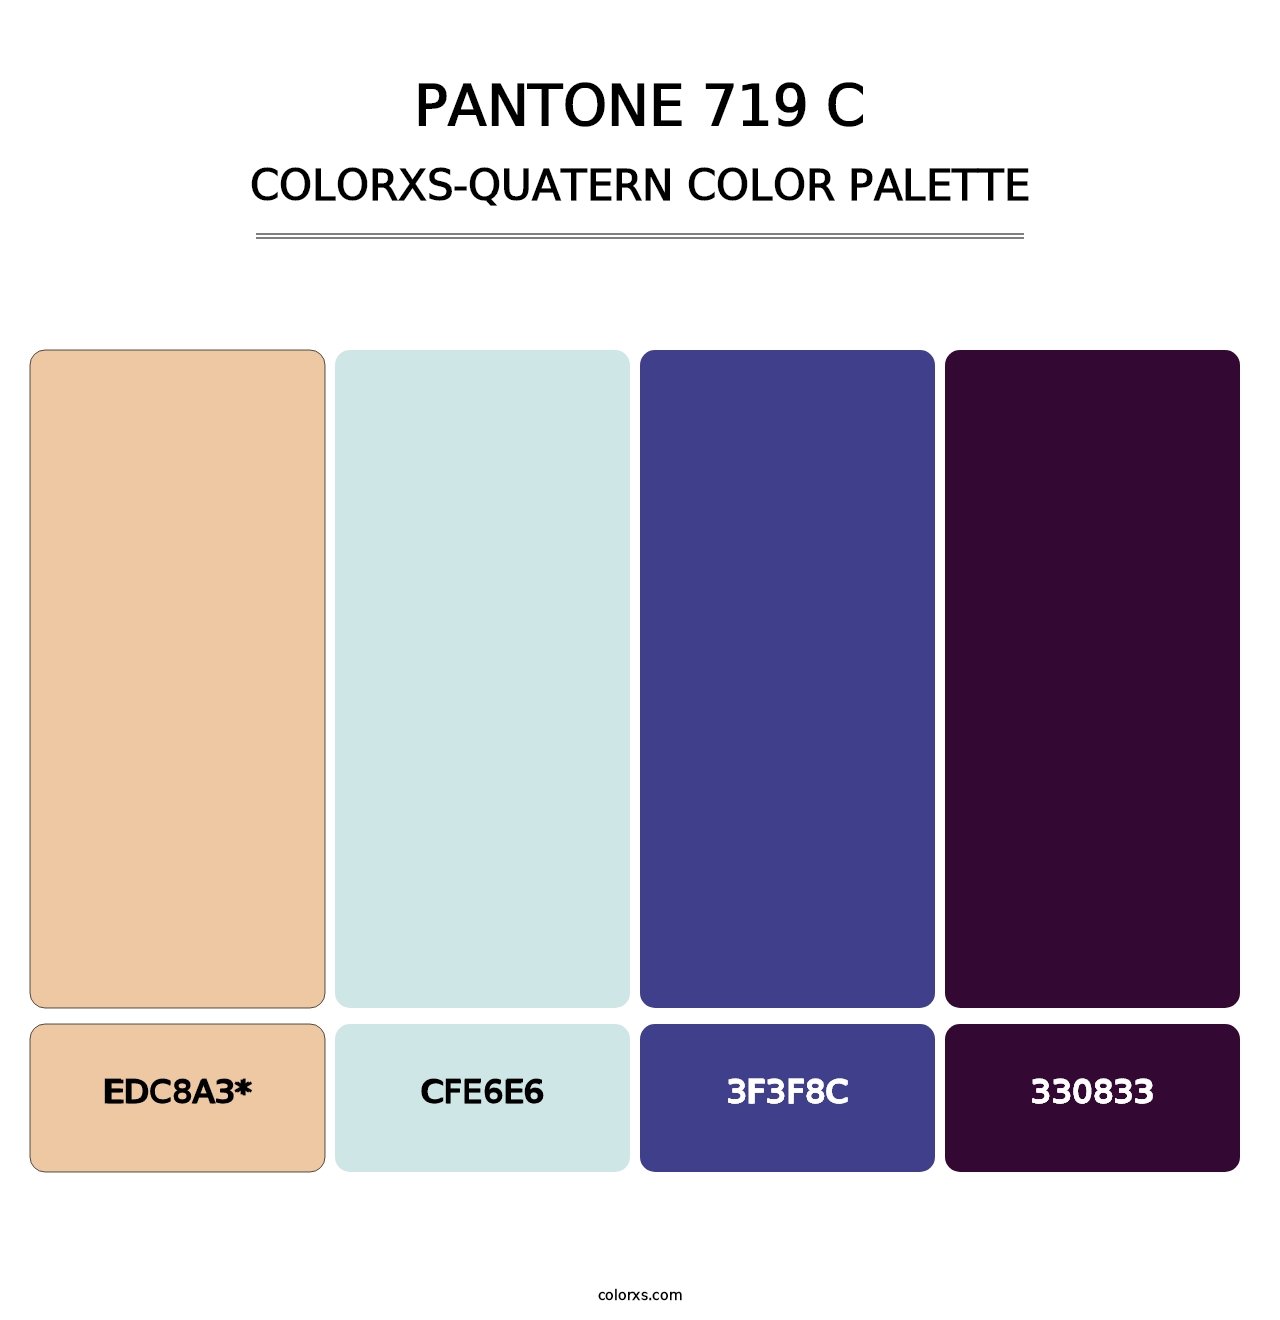 PANTONE 719 C - Colorxs Quatern Palette